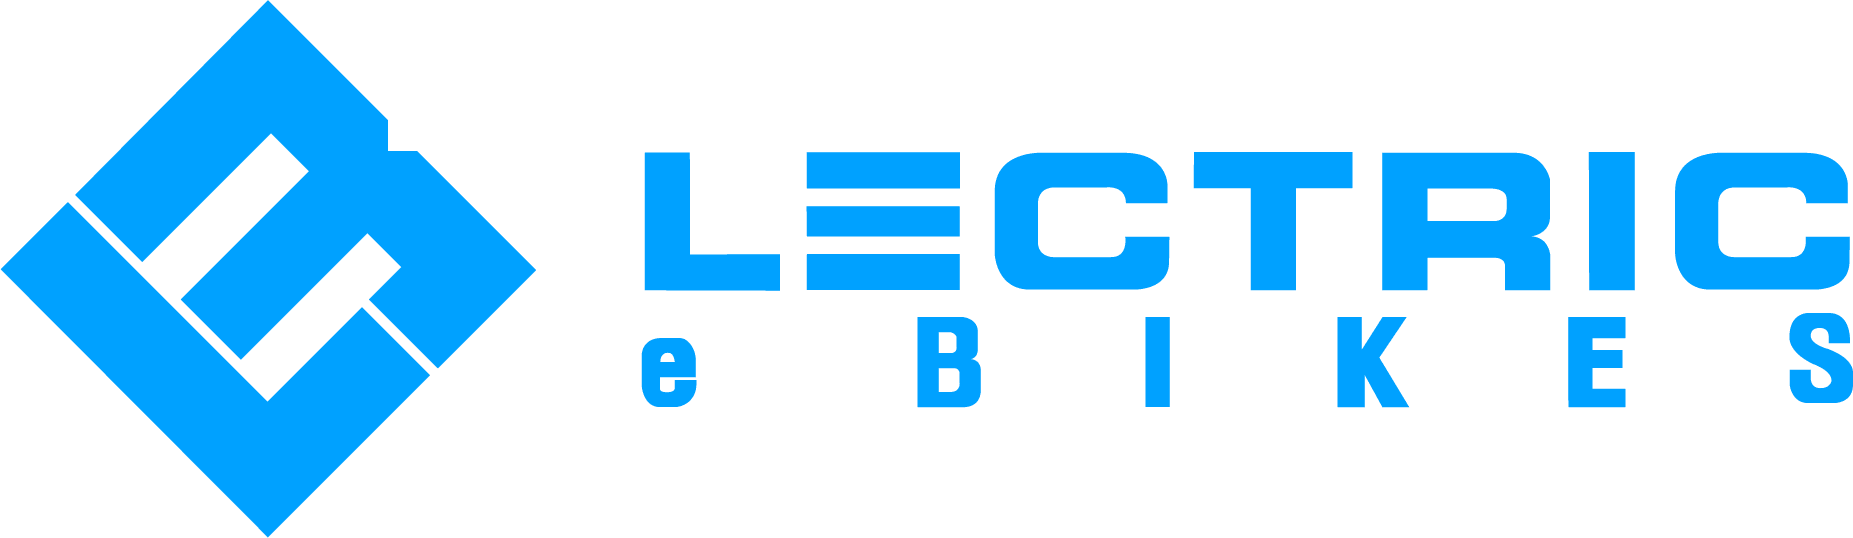 Lectric eBikes retira del mercado mordazas de frenos de disco que se  vendieron en las bicicletas eléctricas de Lectric, debido a riesgos de  colisión y lesión (alerta de retiro del mercado)